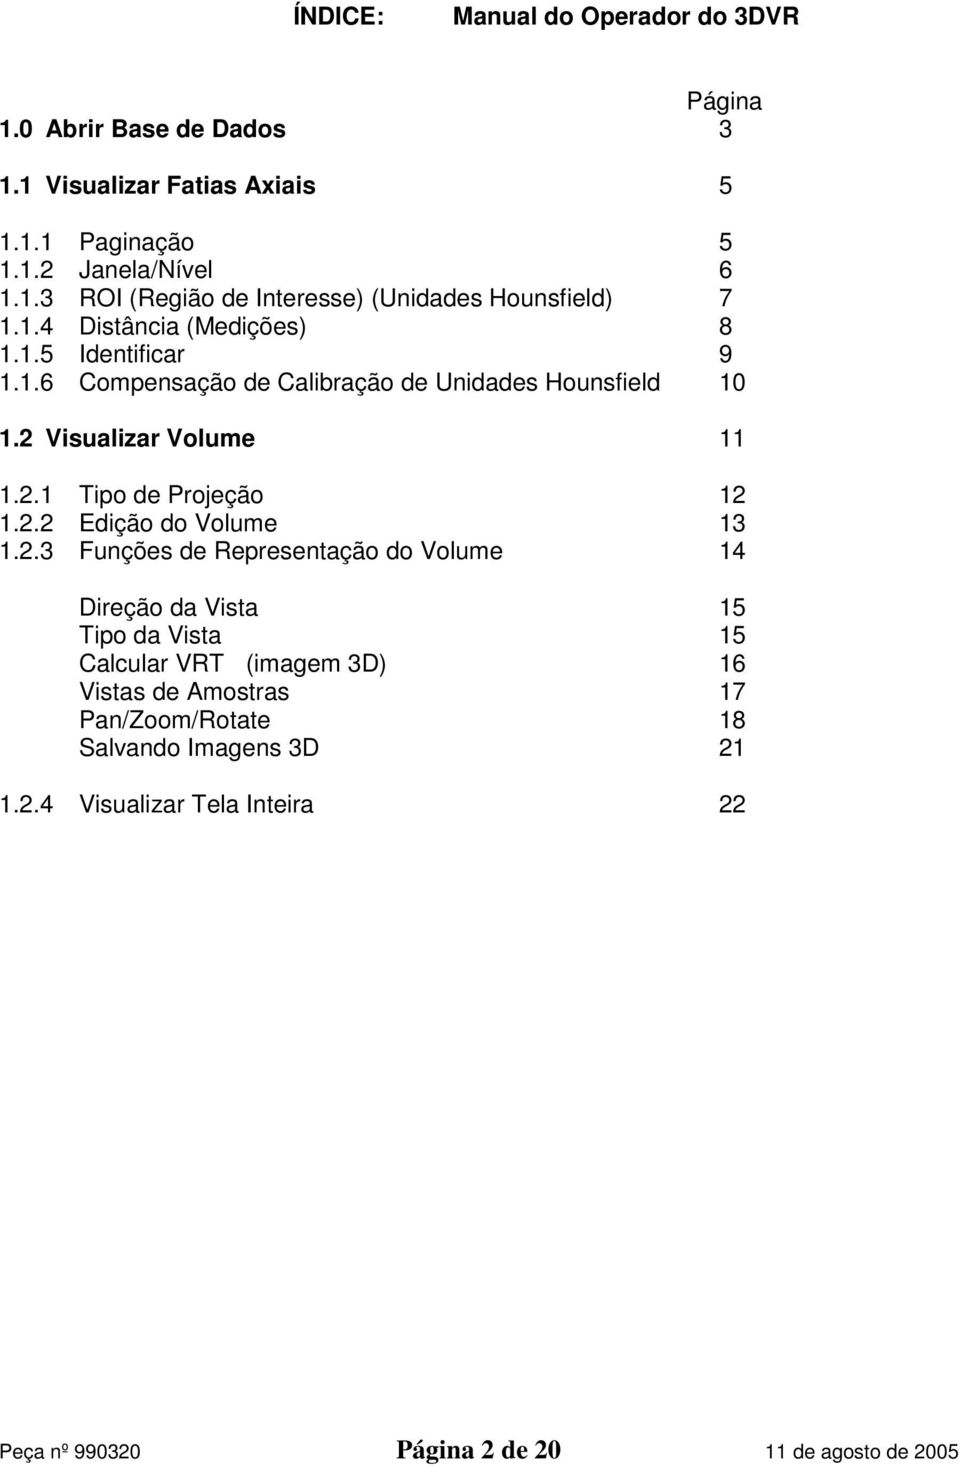 2.2 Edição do Volume 13 1.2.3 Funções de Representação do Volume 14 Direção da Vista 15 Tipo da Vista 15 Calcular VRT (imagem 3D) 16 Vistas de Amostras 17